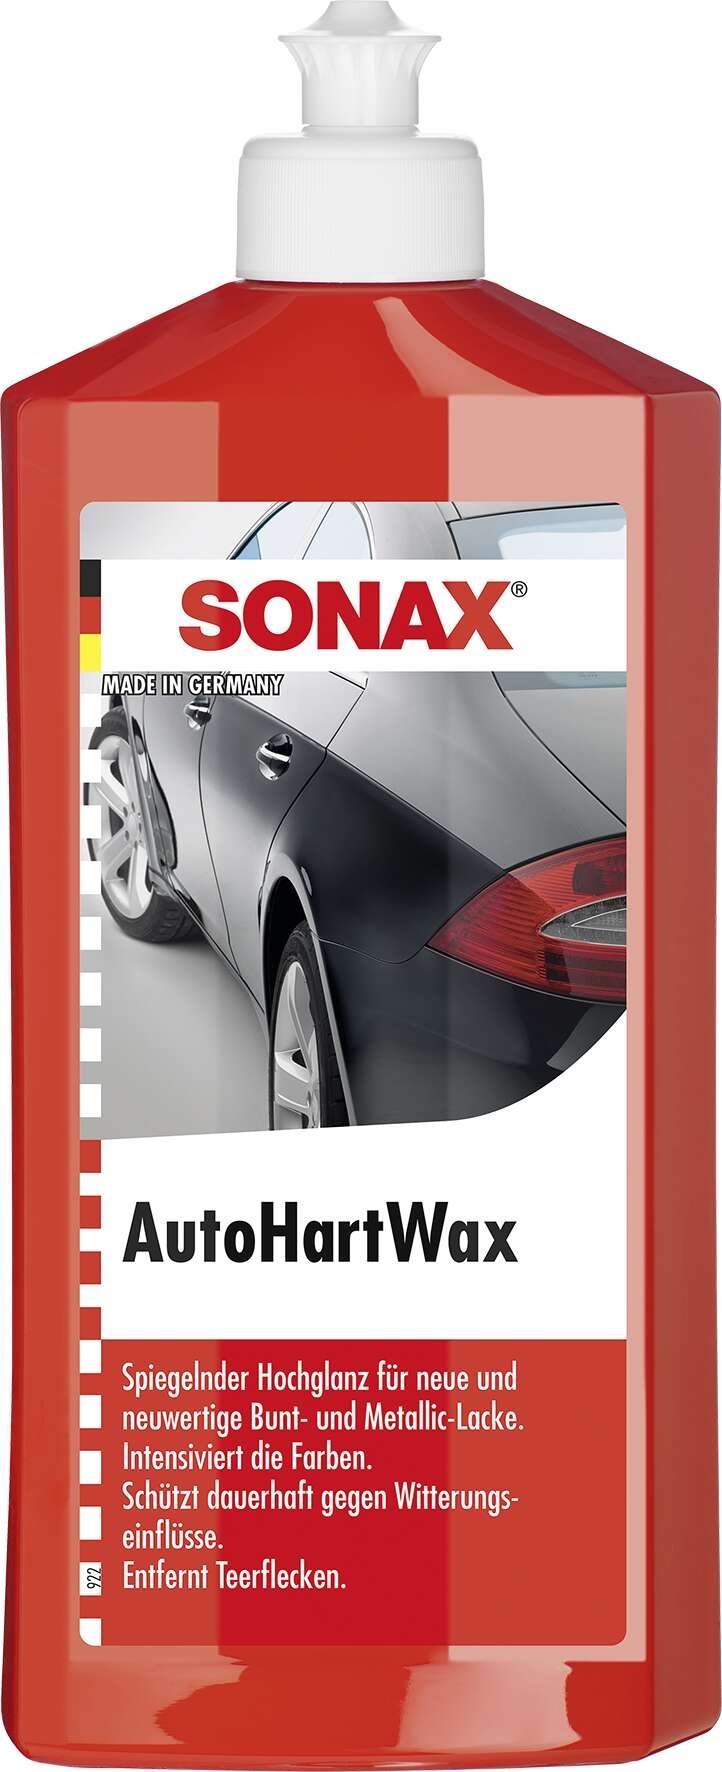 SONAX AutoHartWax 500 ml rimuove le macchie di catrame